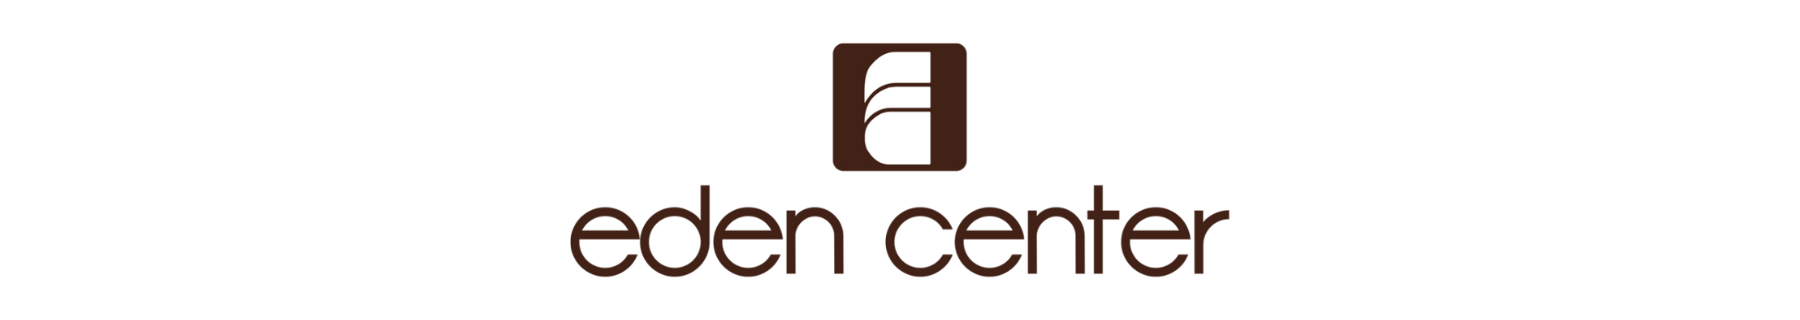 eden center logo